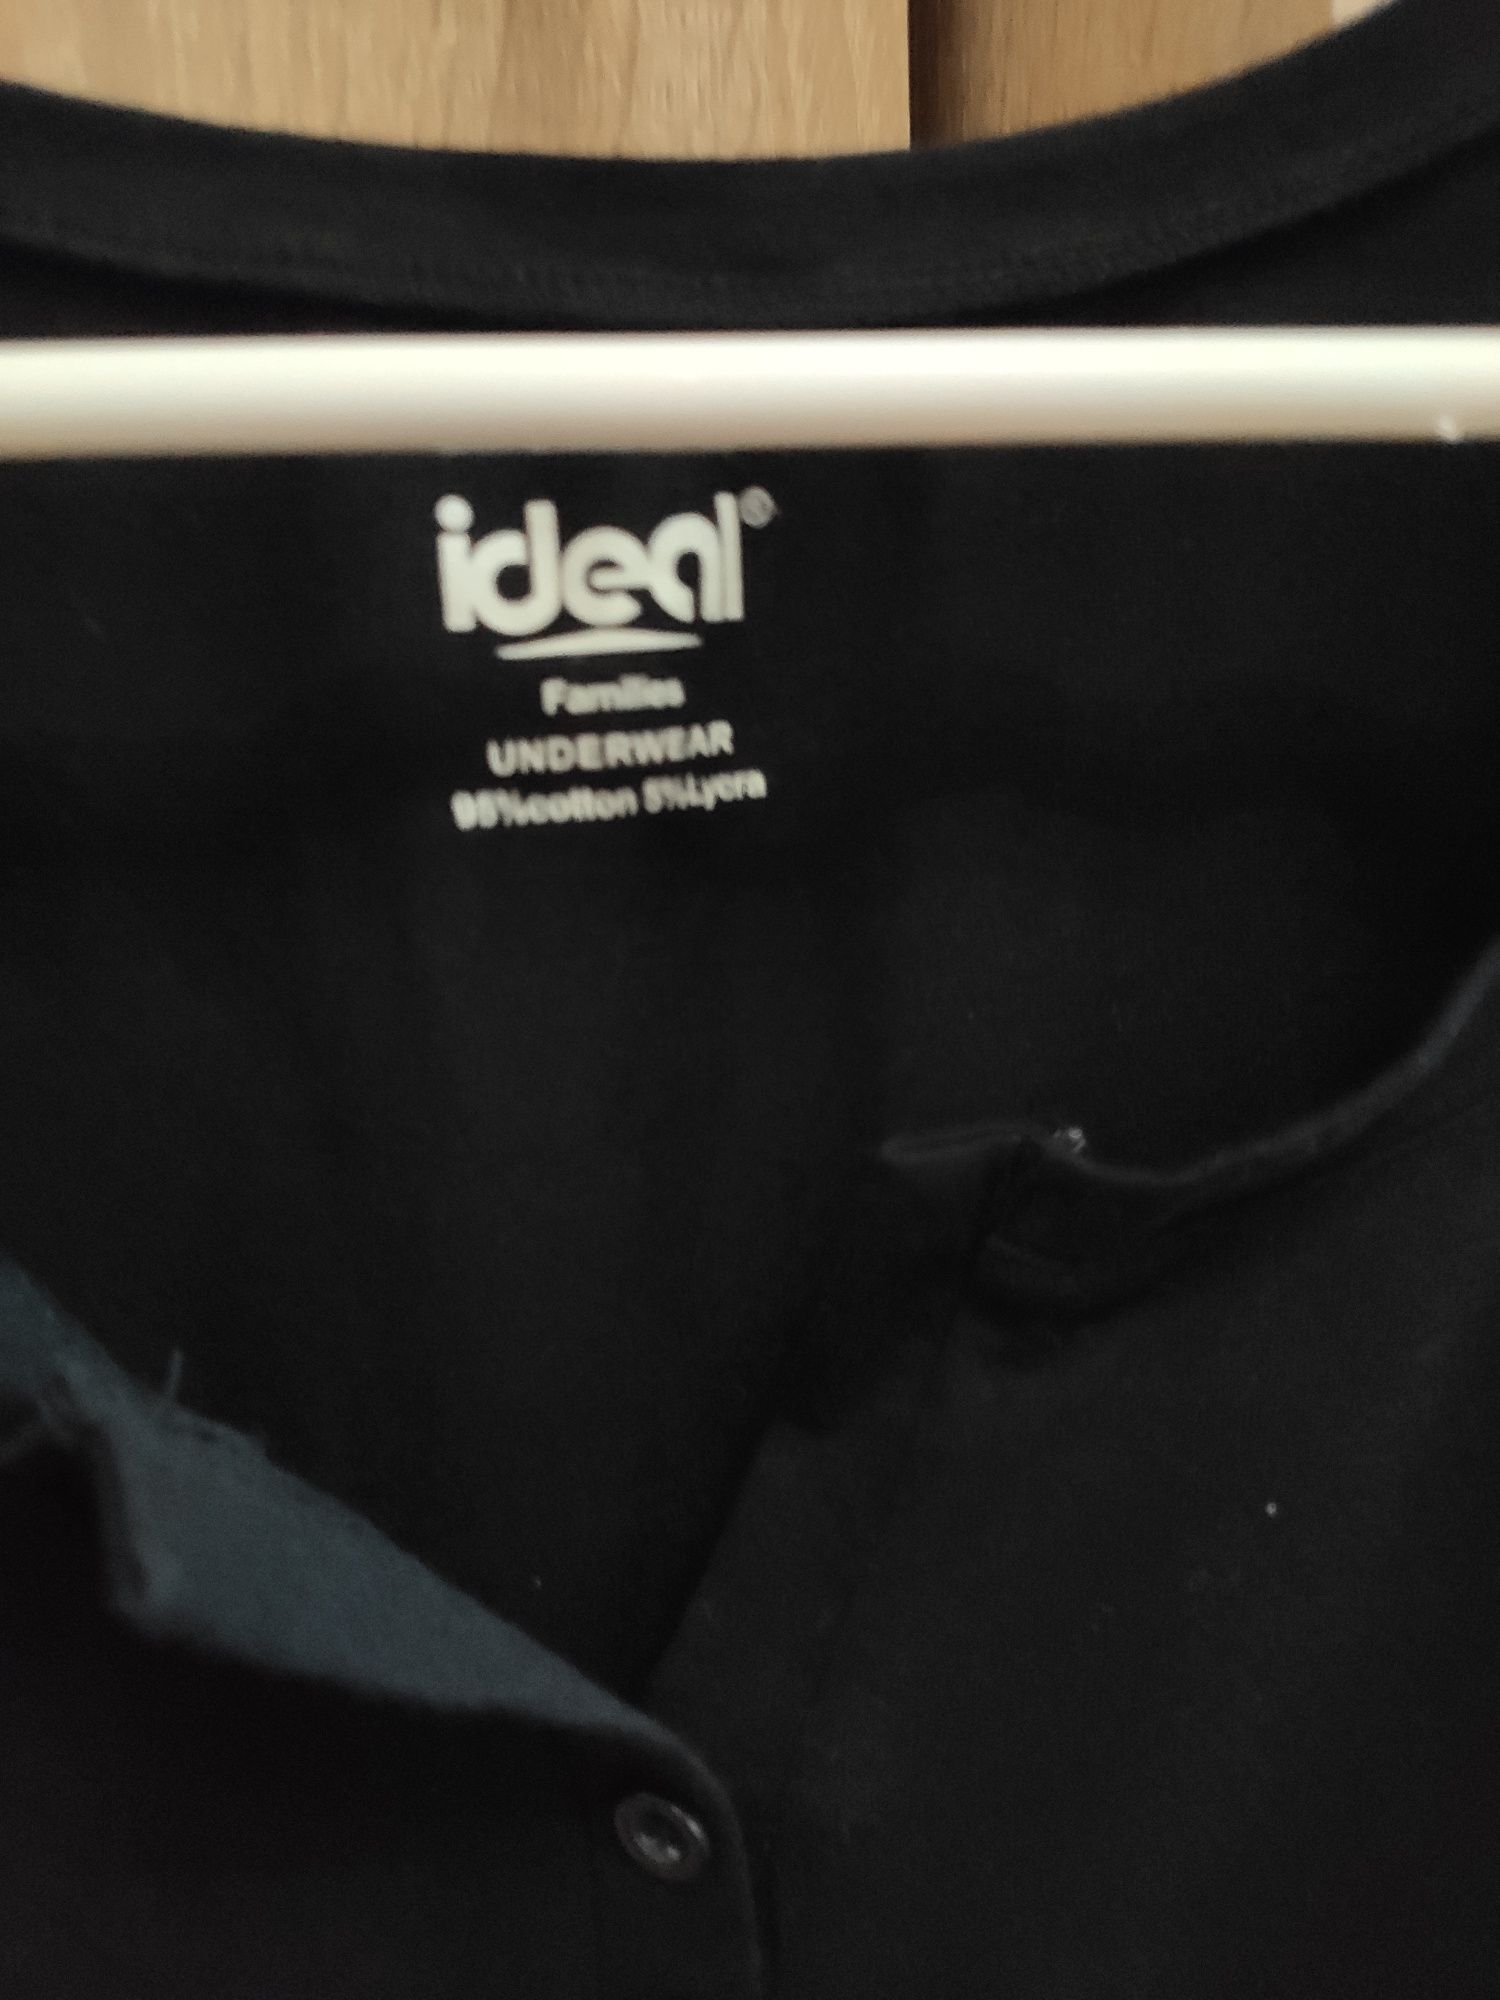 Czarna bluzka koronka ideal S